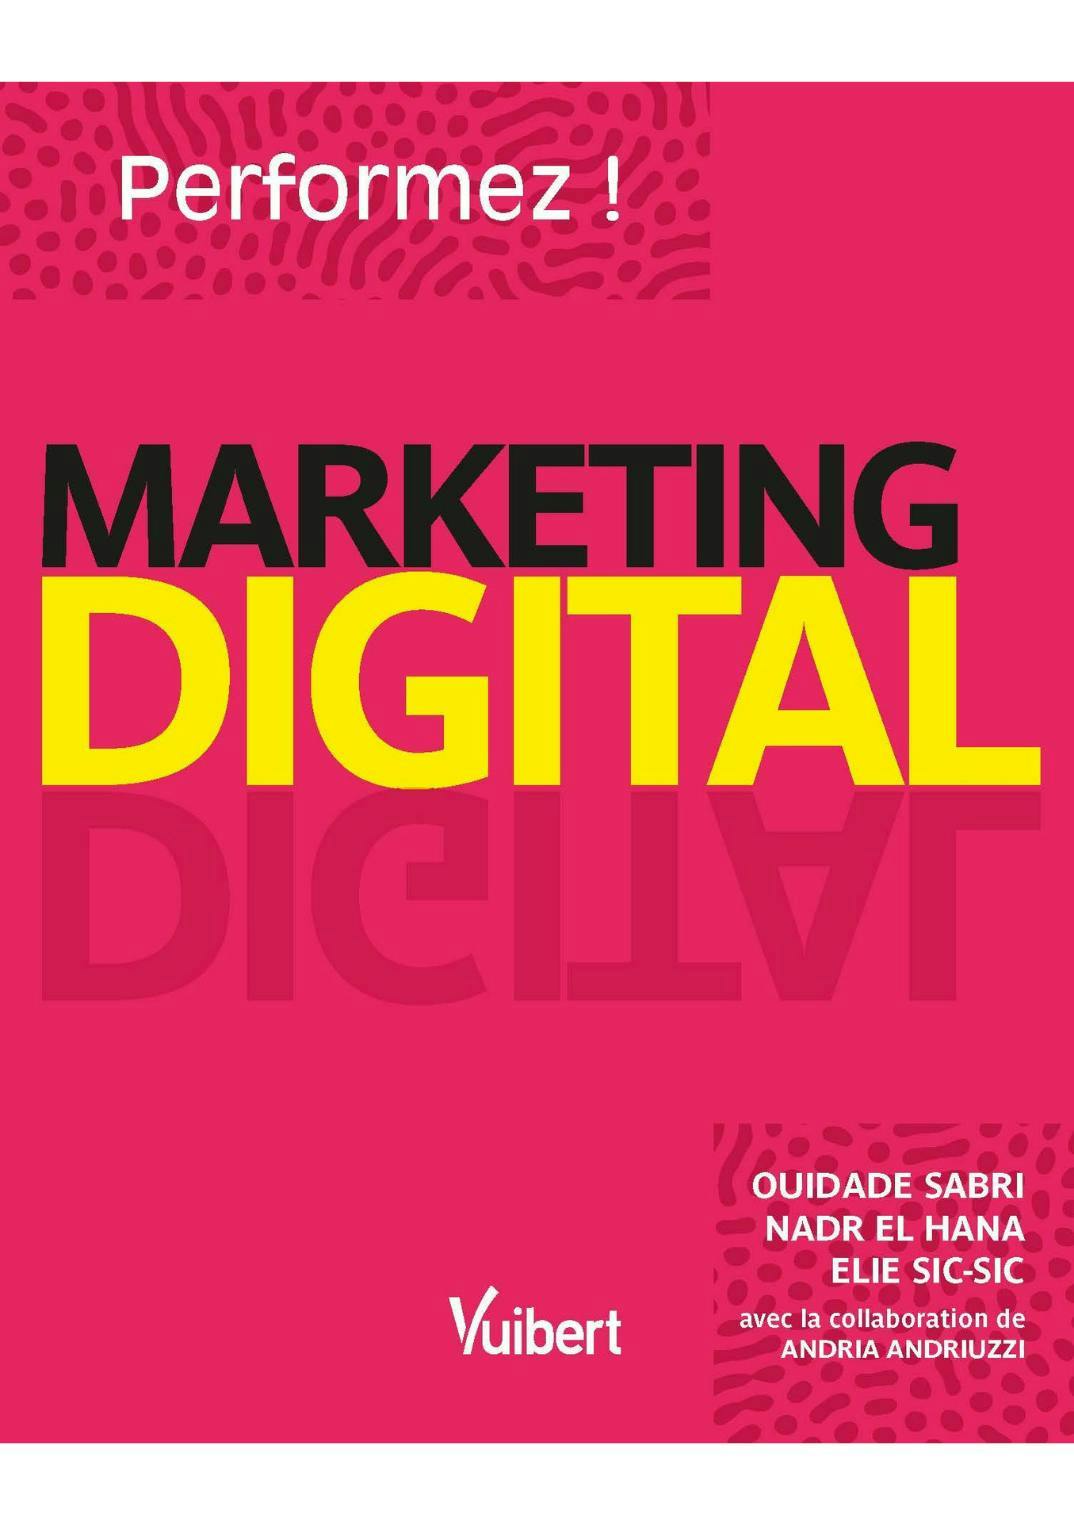 Couverture du livre - Performez ! Marketing digital 